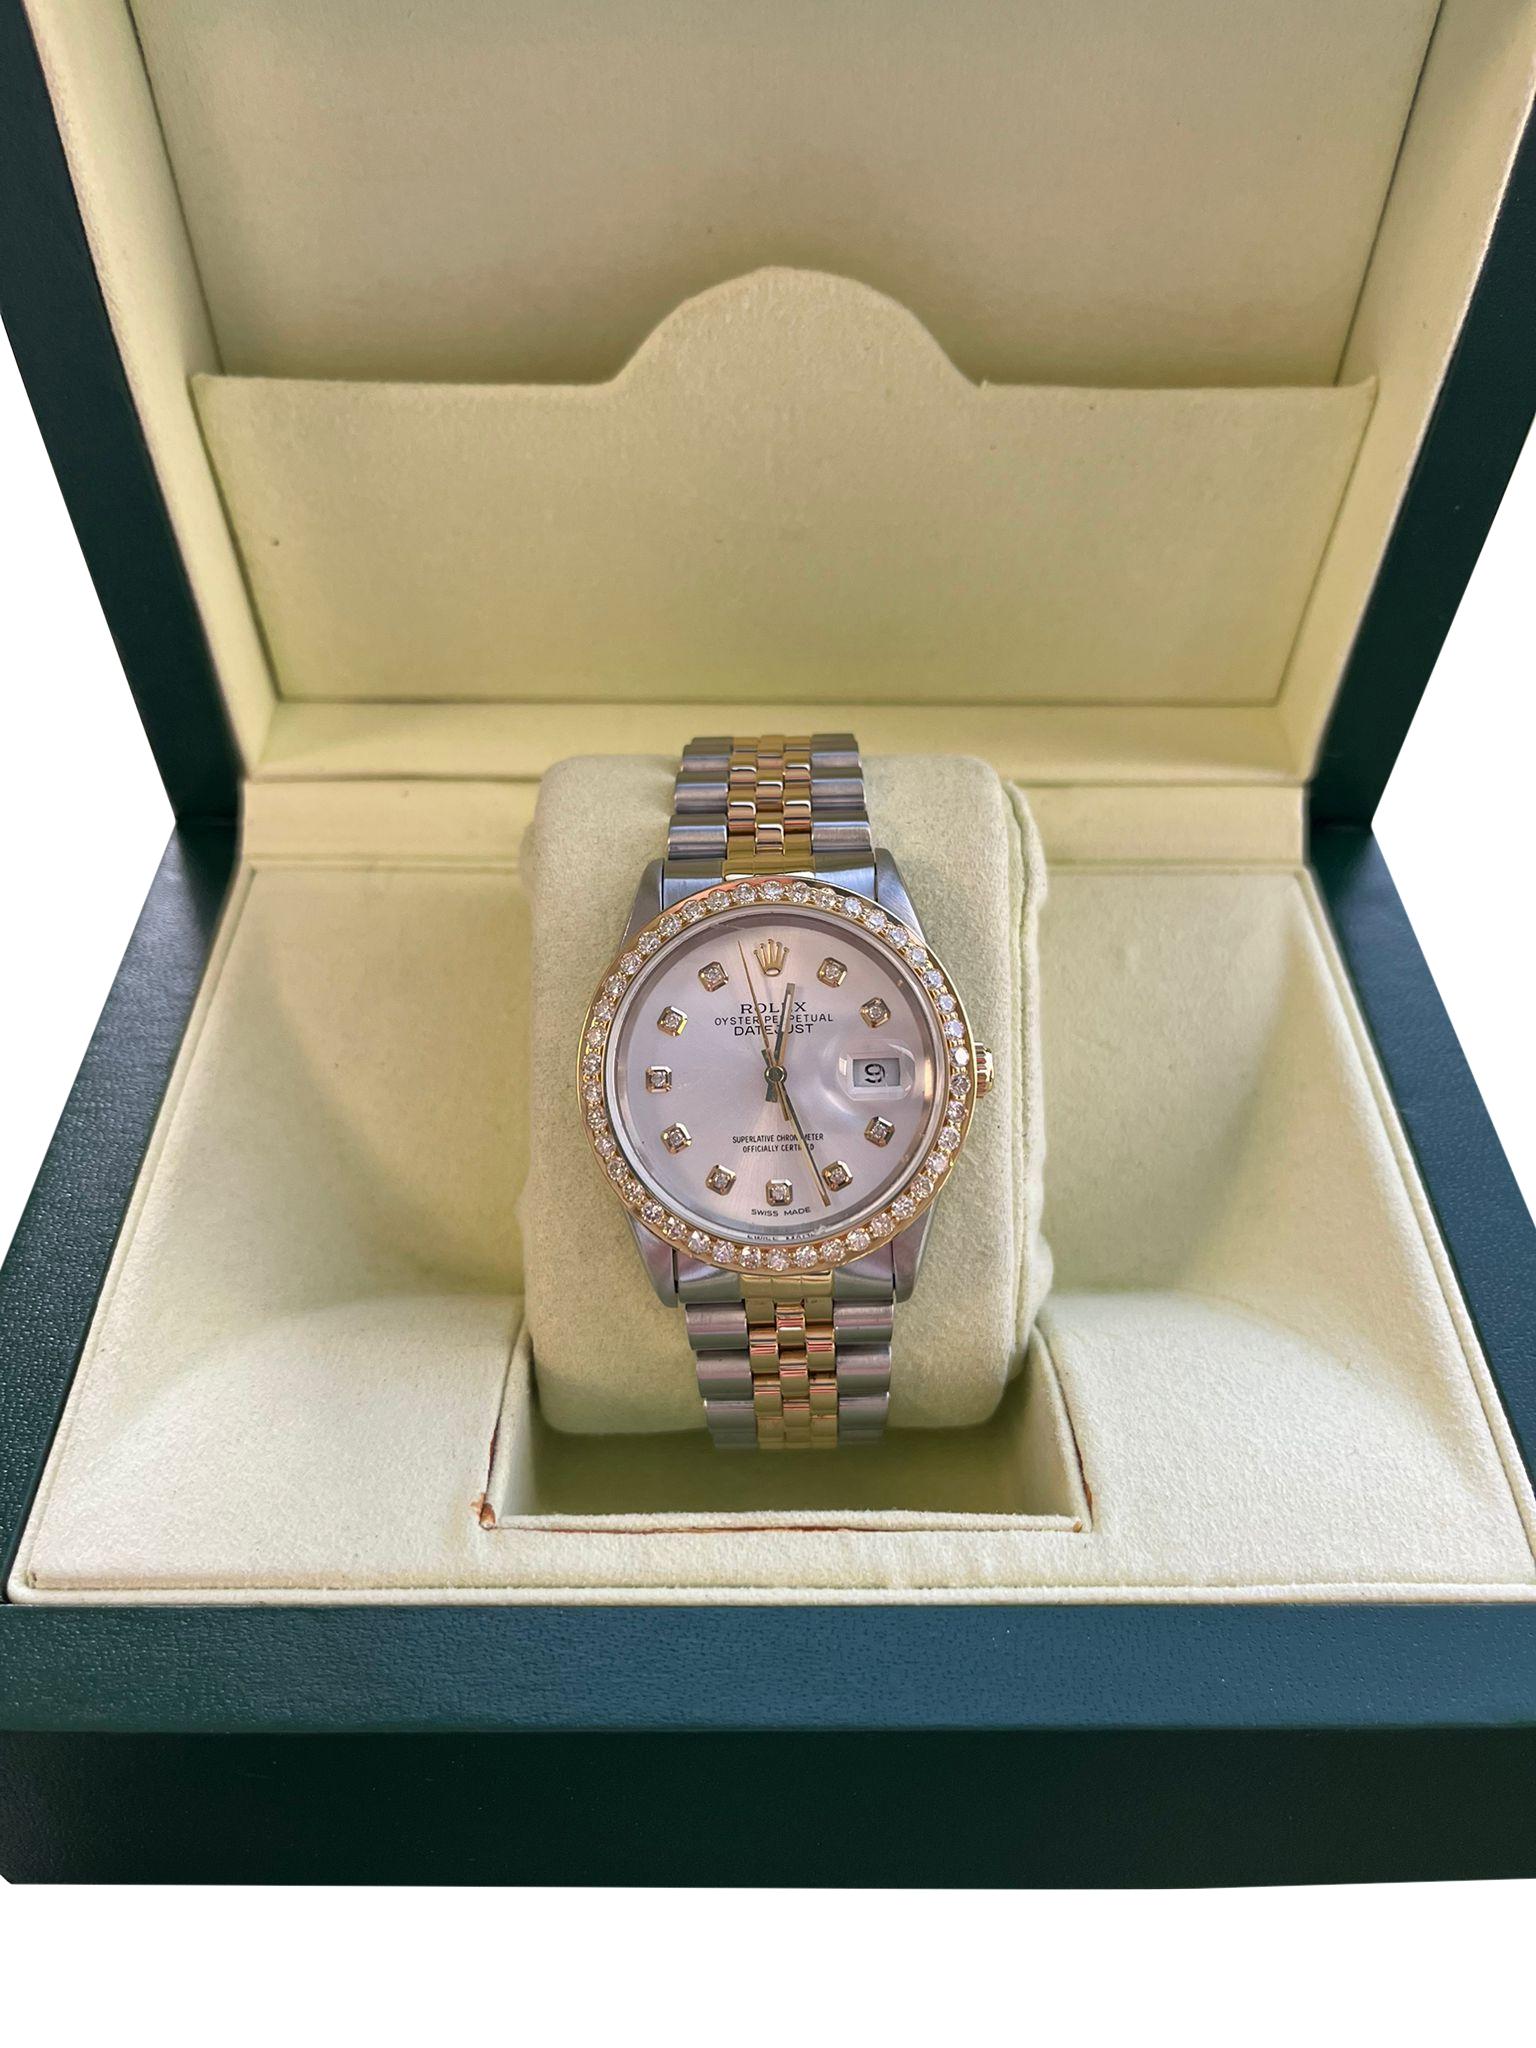 Rolex Datejust Steel Yellow Gold Rose Gray Diamond Mens Watch 16233. Mouvement automatique à remontage automatique, officiellement certifié chronomètre. Boîtier en acier inoxydable de 36.0 mm de diamètre. Logo Rolex sur une couronne. Cadran à